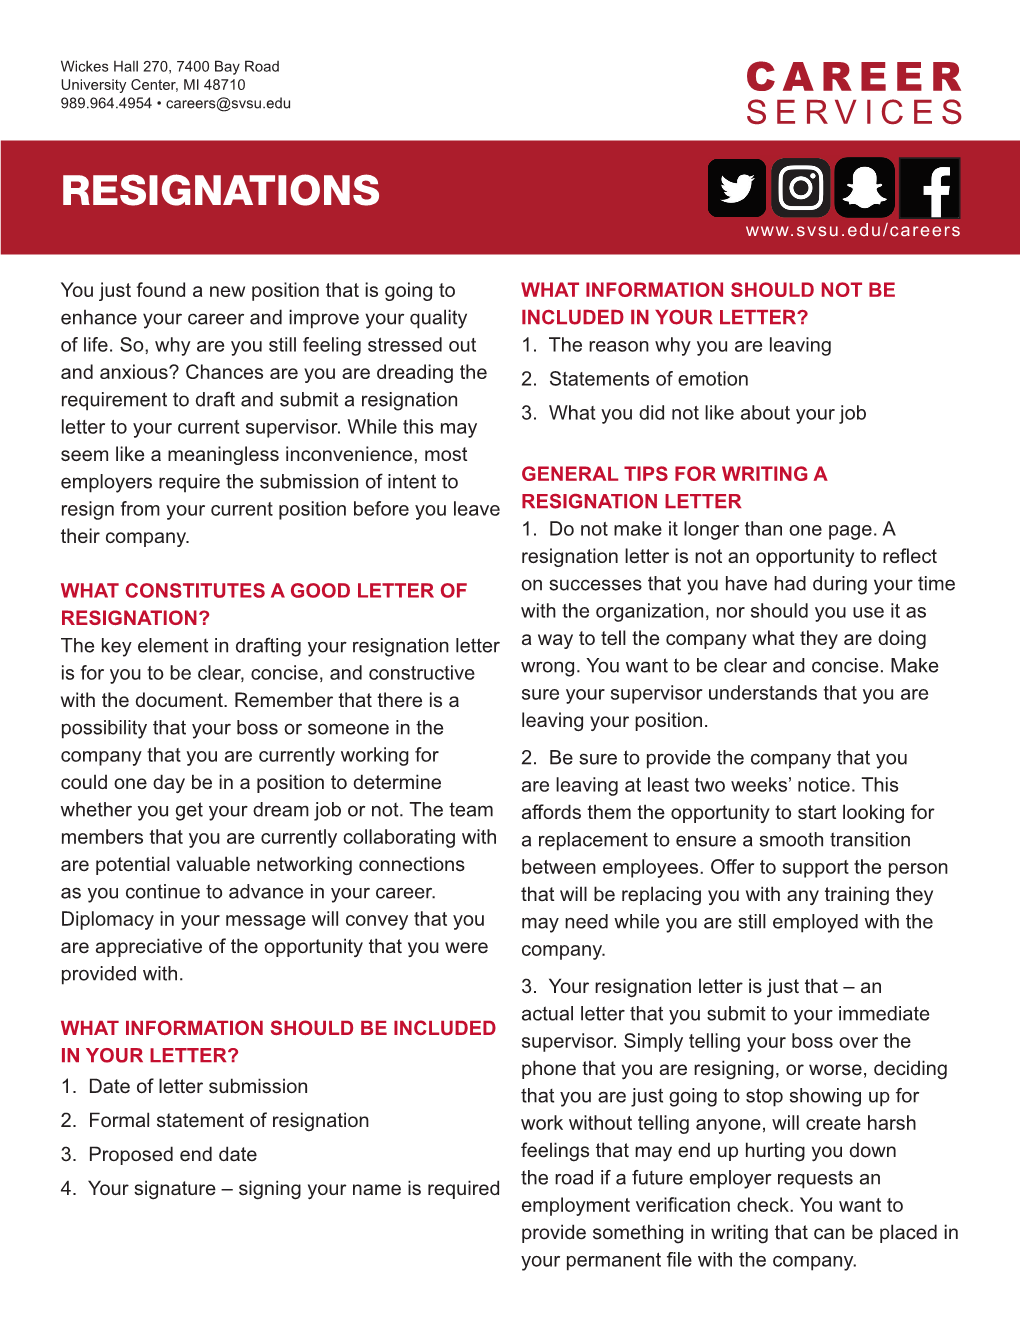 Resignations (PDF)